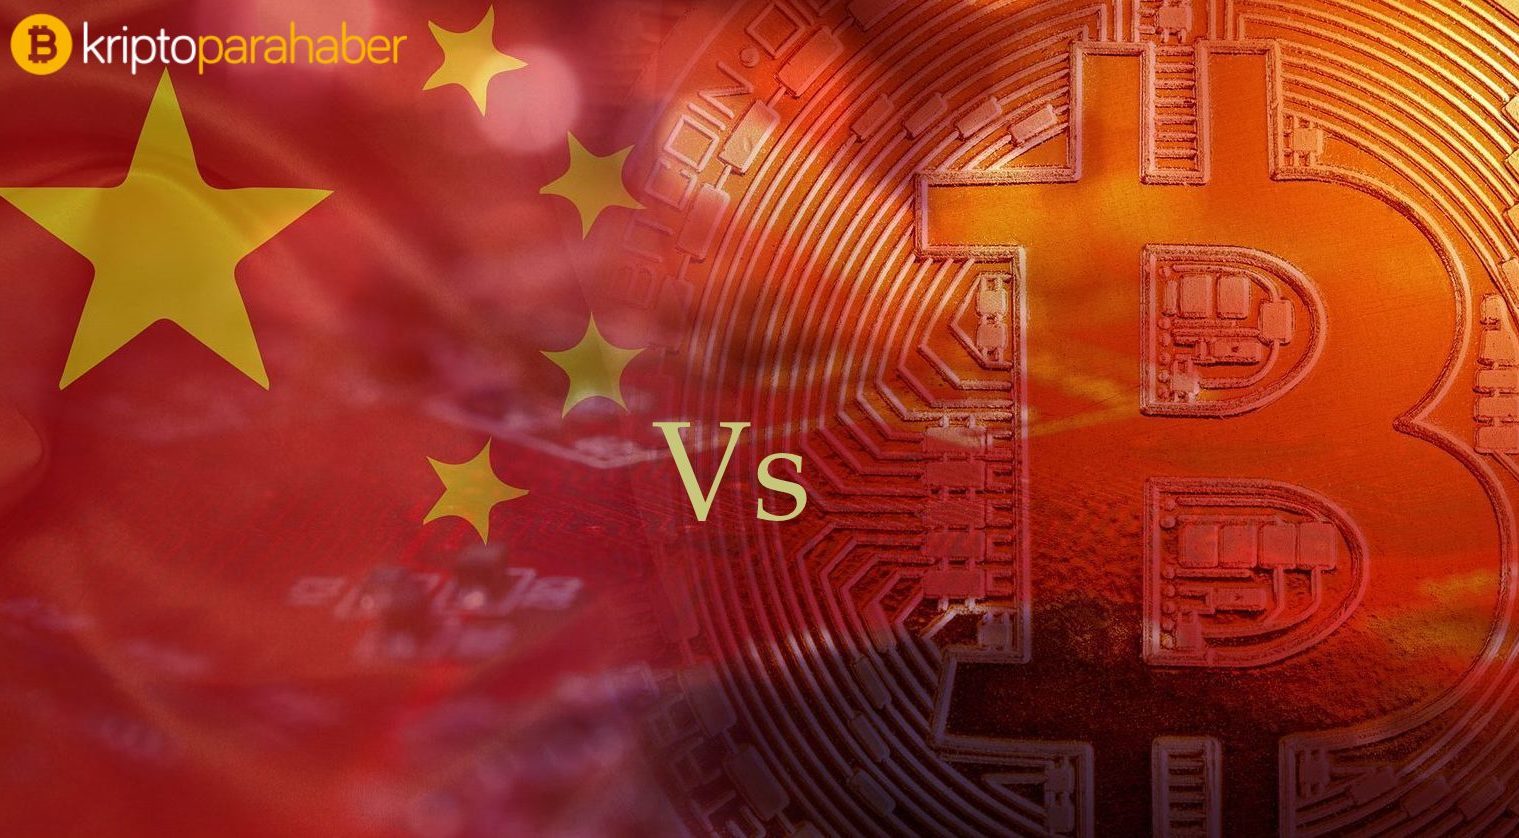 Çin kendi kripto parası ile sektördeki hakimiyetini arttırıyor